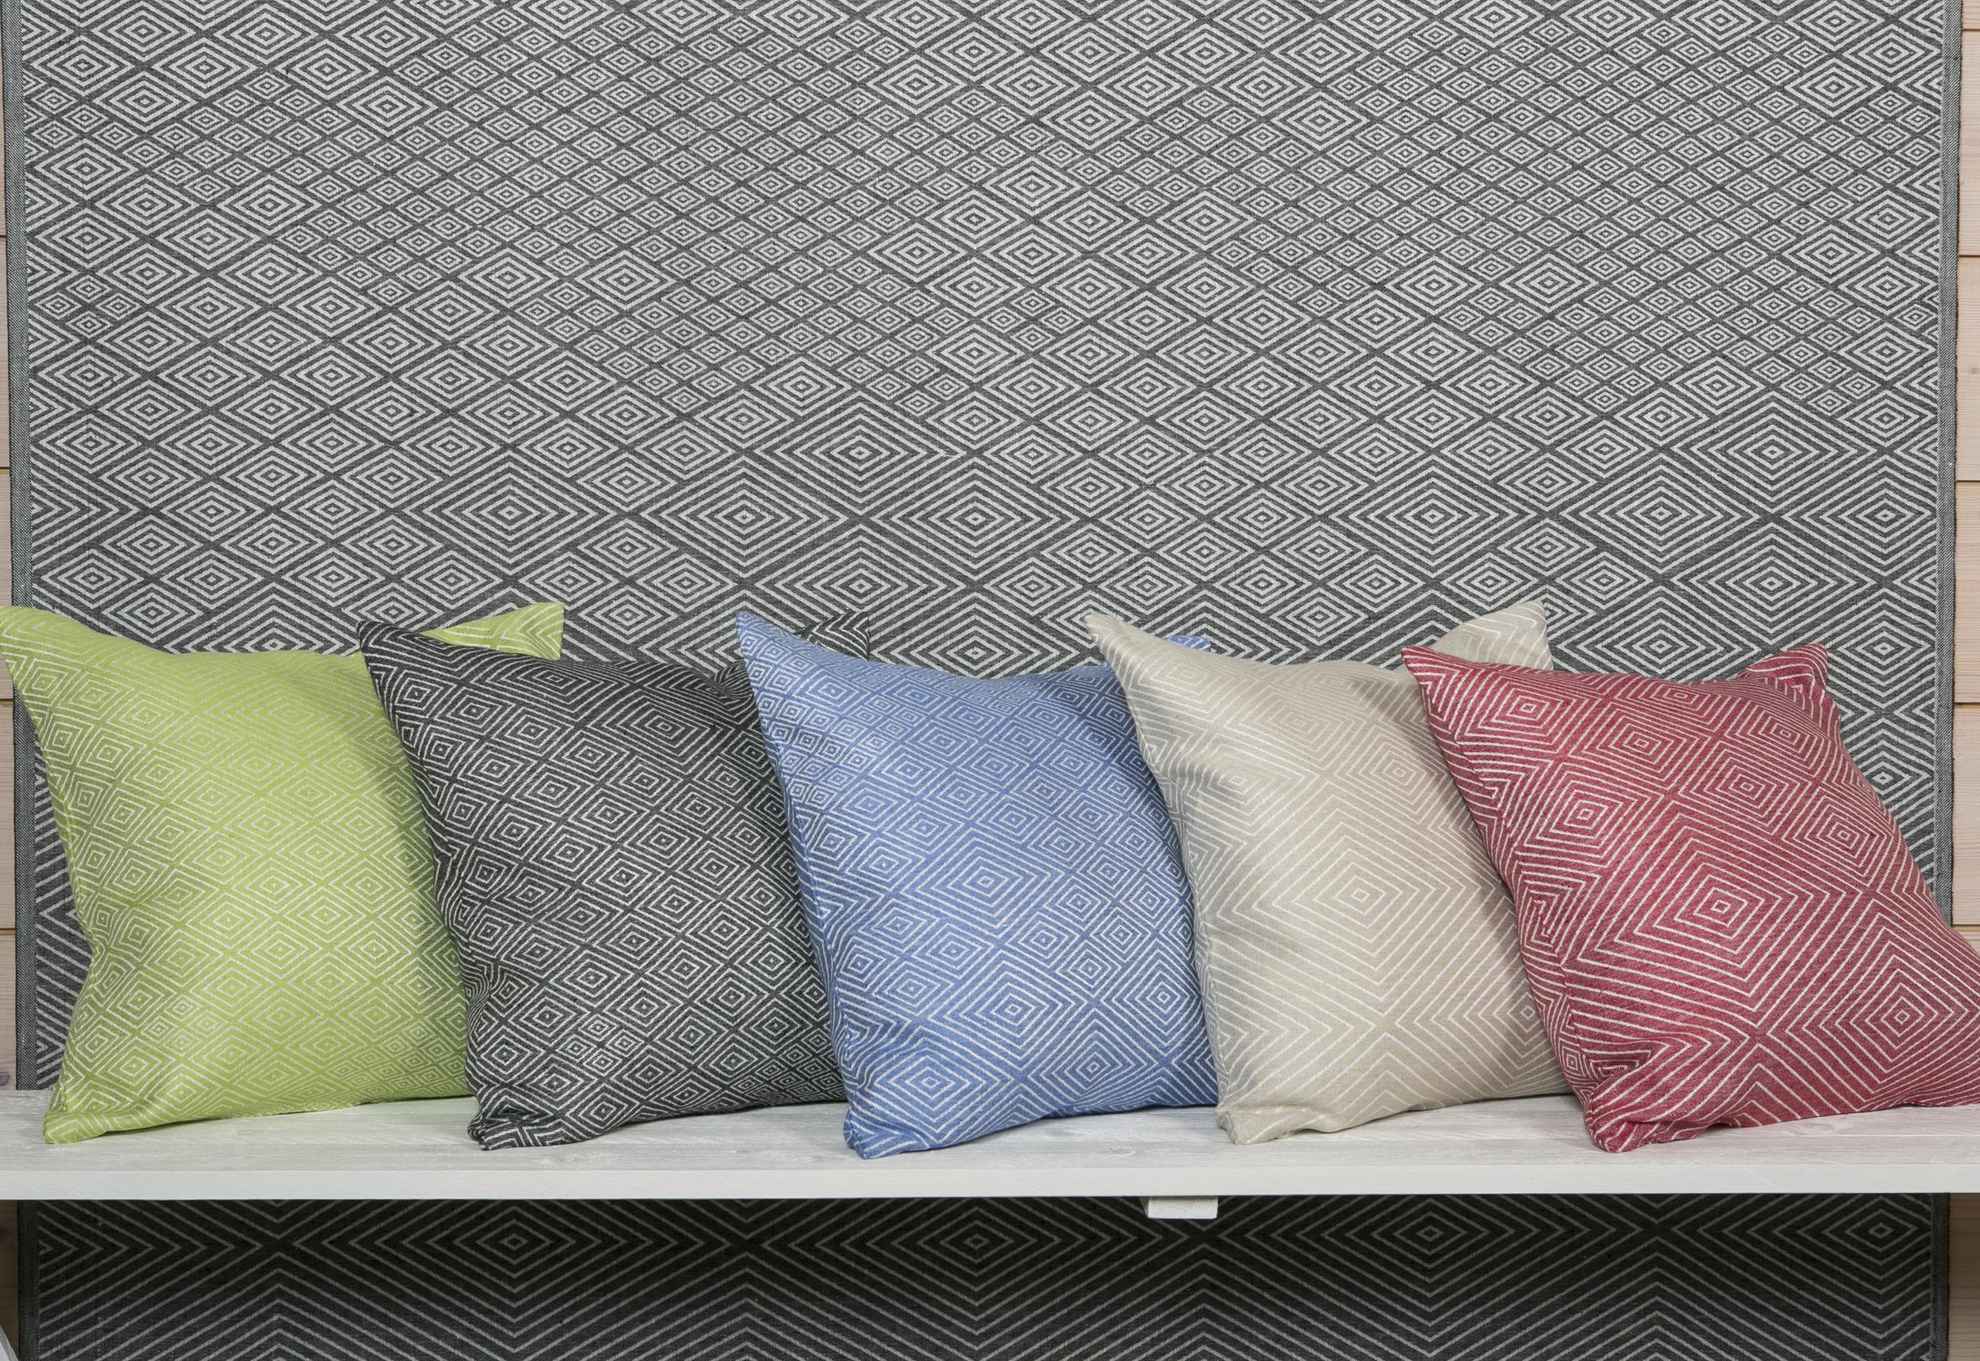 Cinq oreillers de couleurs différentes avec un motif symétrique sont posés devant un tissu gris avec le même motif.